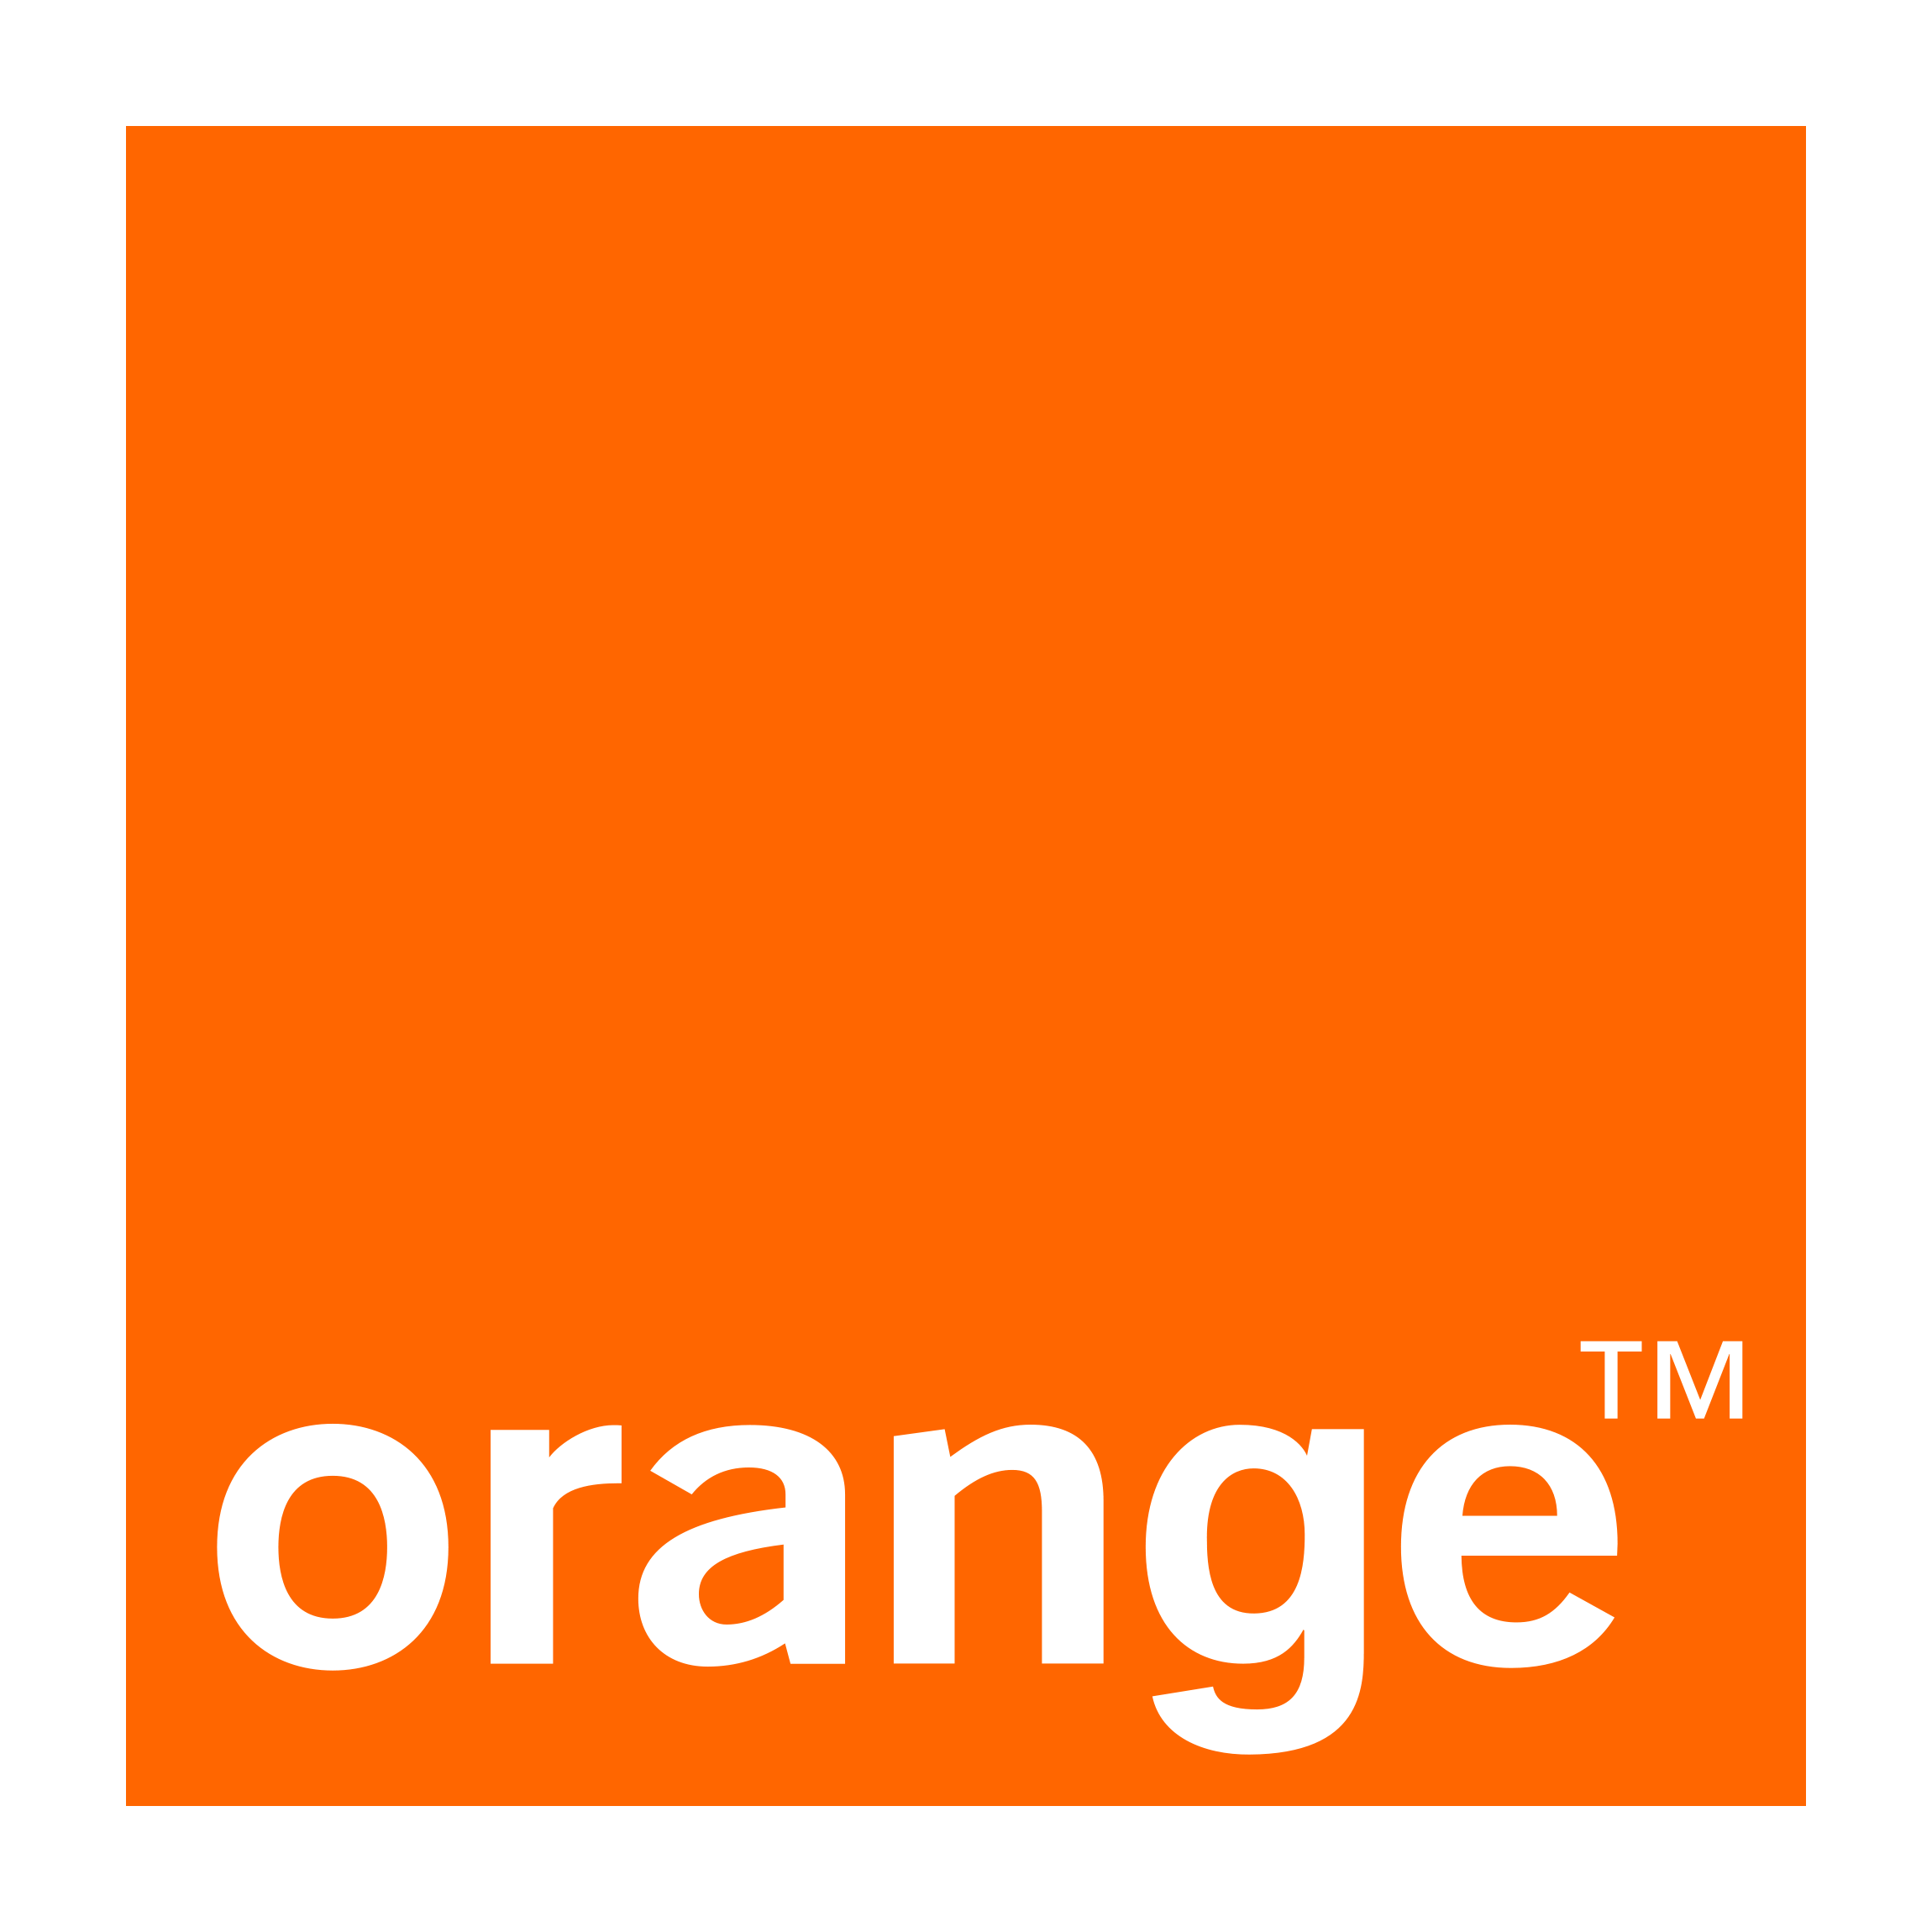 Orange Company Logo - Orange Logo, Orange Symbol, Meaning, History and Evolution